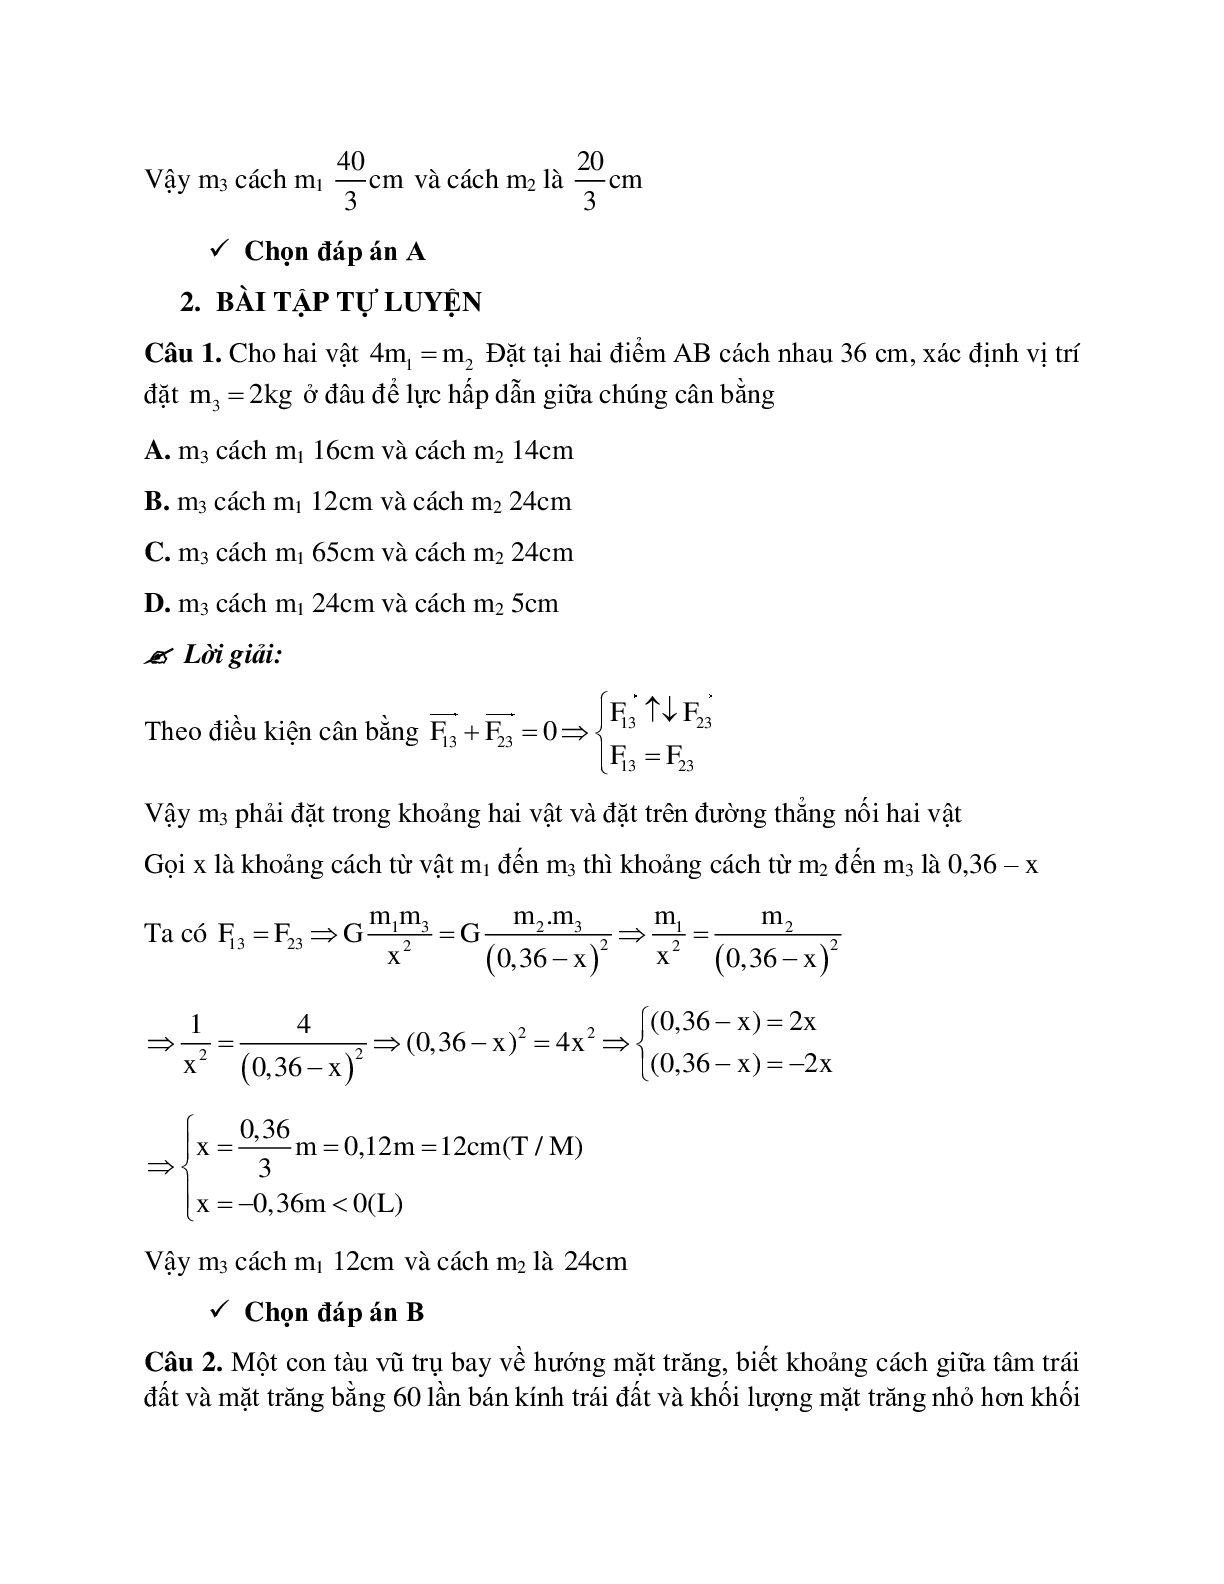 Phương pháp giải và bài tập về Xác định vị trí để đặt 3 để lực hấp dẫn cân bằng (trang 2)